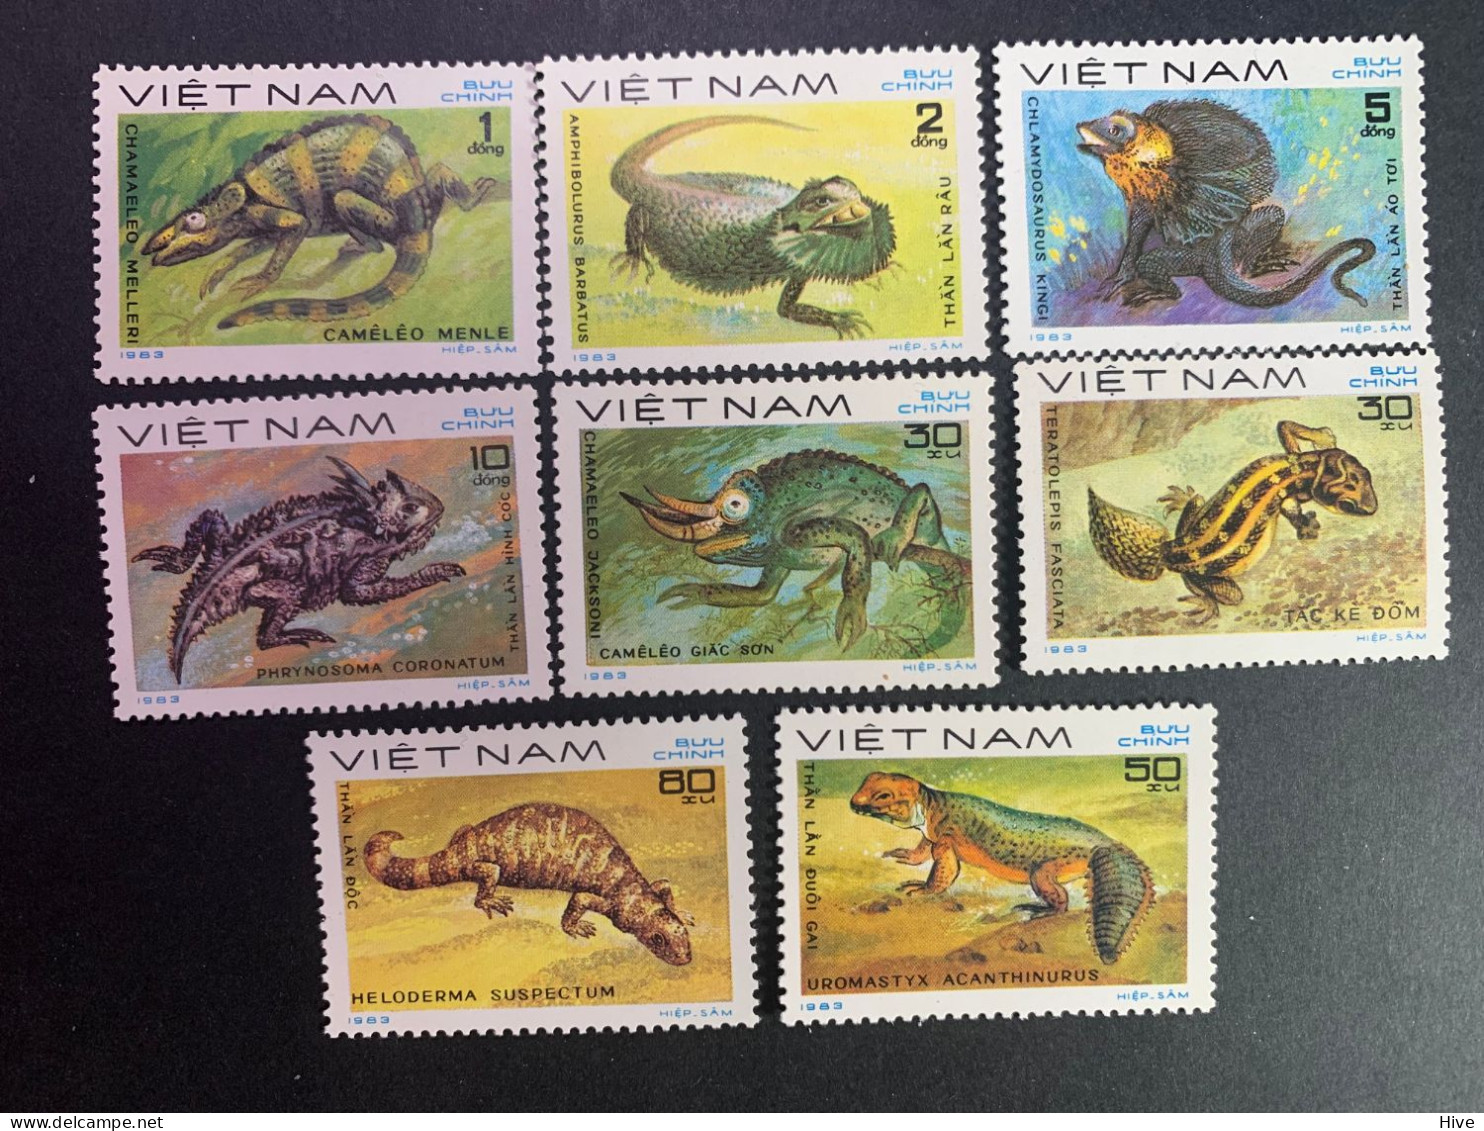 Vietnam 1983 - Mi-Nr. 1309-1316 Reptilien MNH - Vietnam